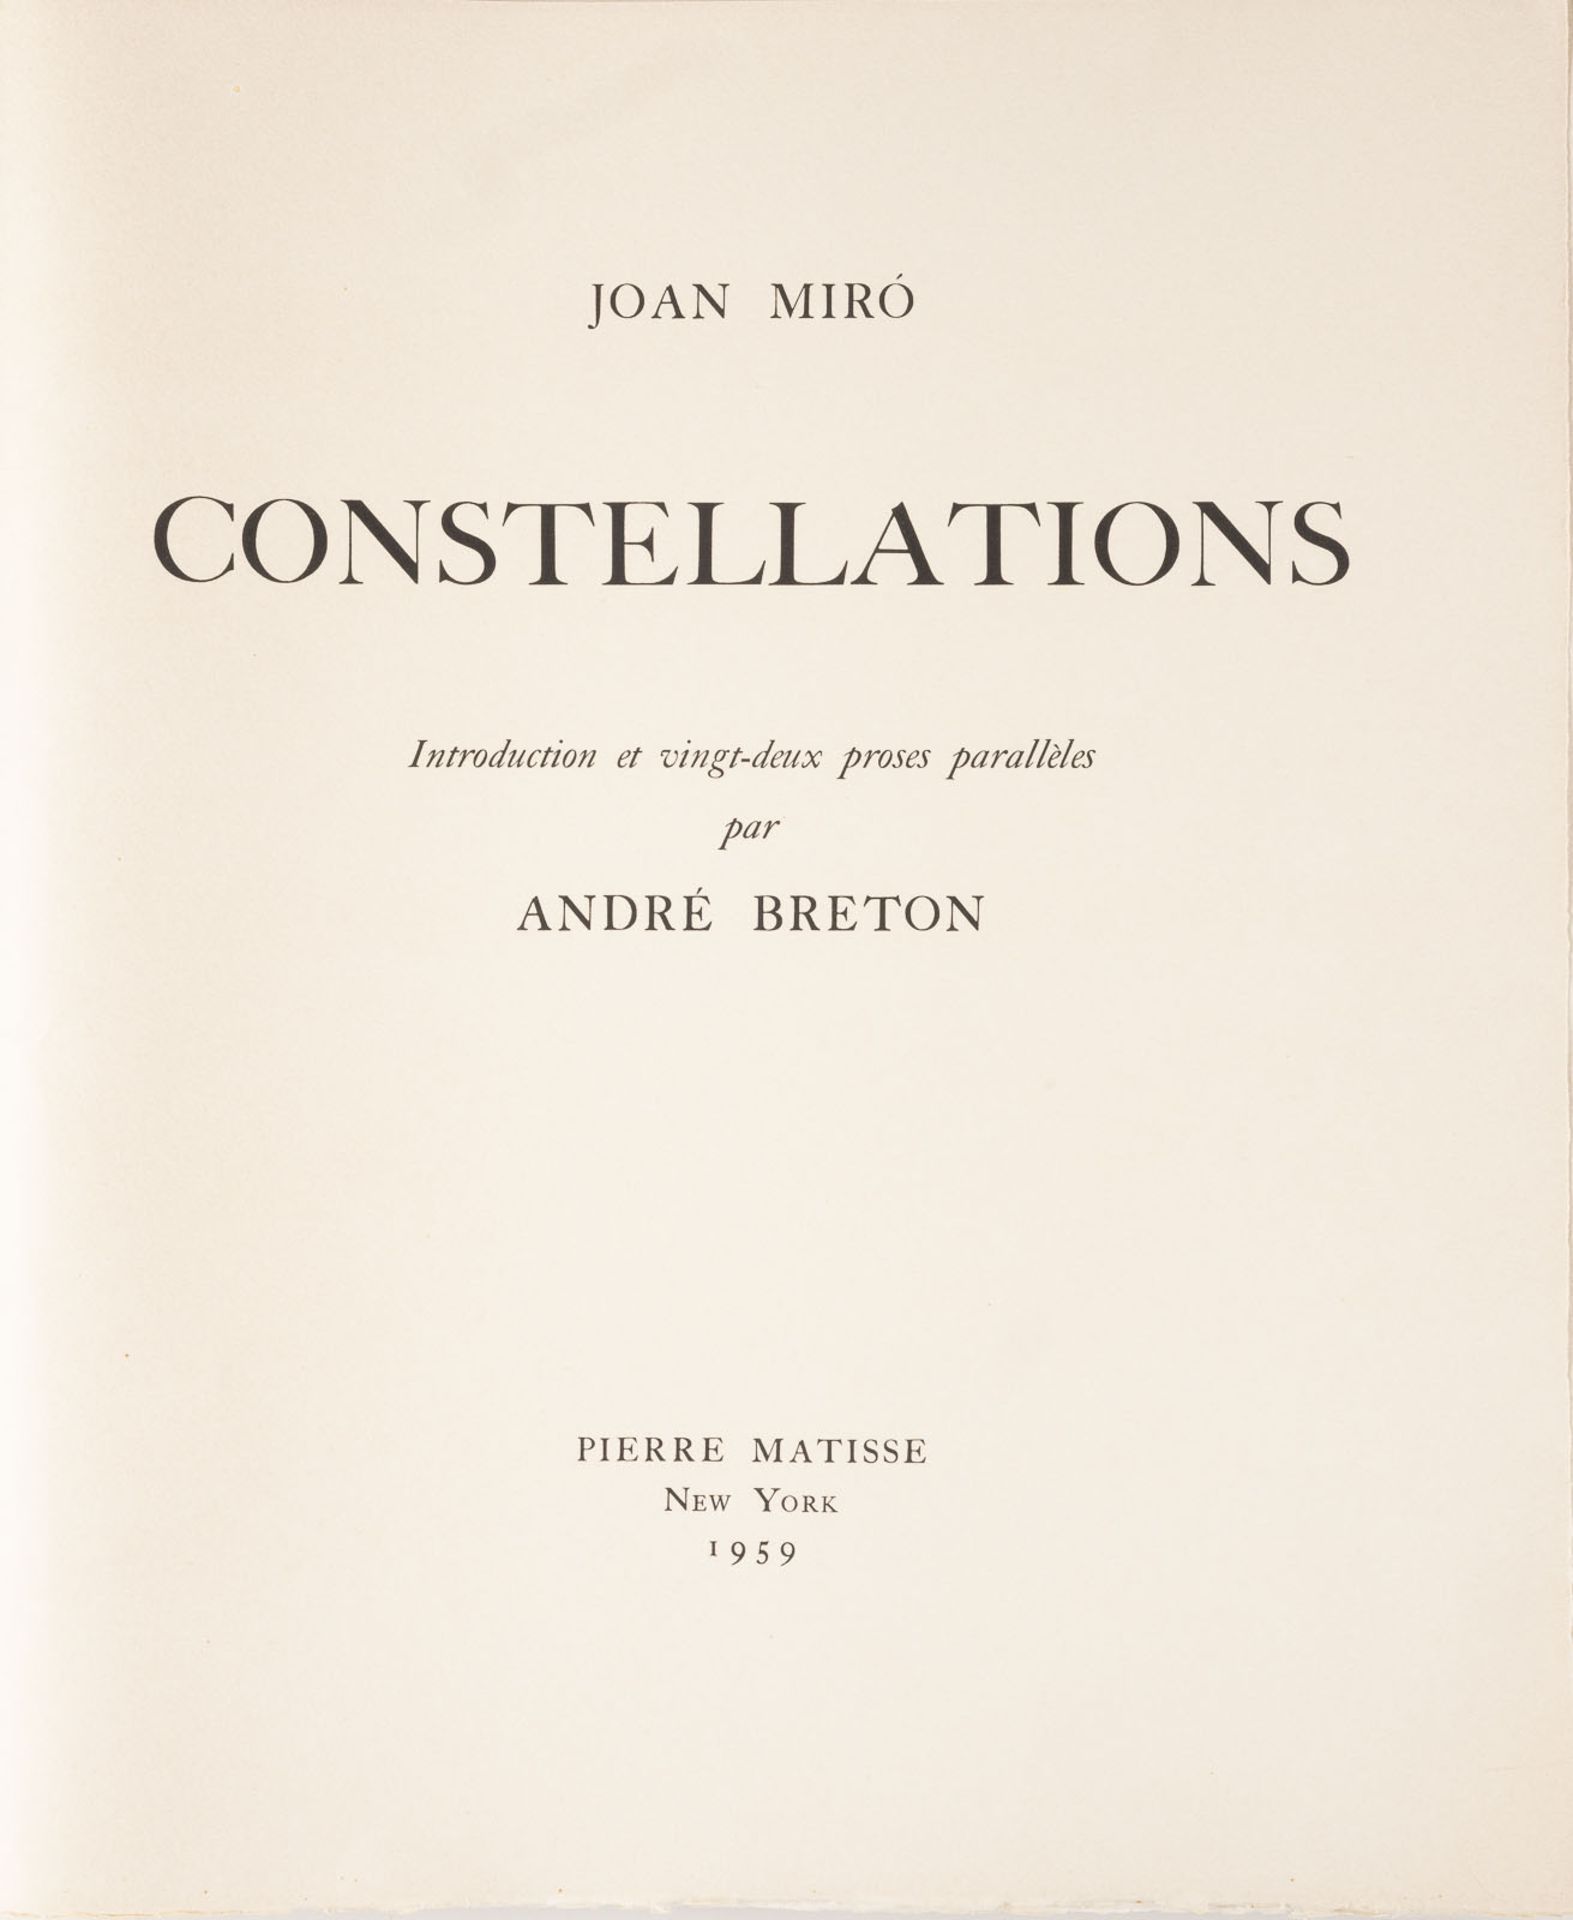 JOAN MIRO ZWEI BLÄTTER AUS 'CONSTELLATION' (1959) - Bild 3 aus 6